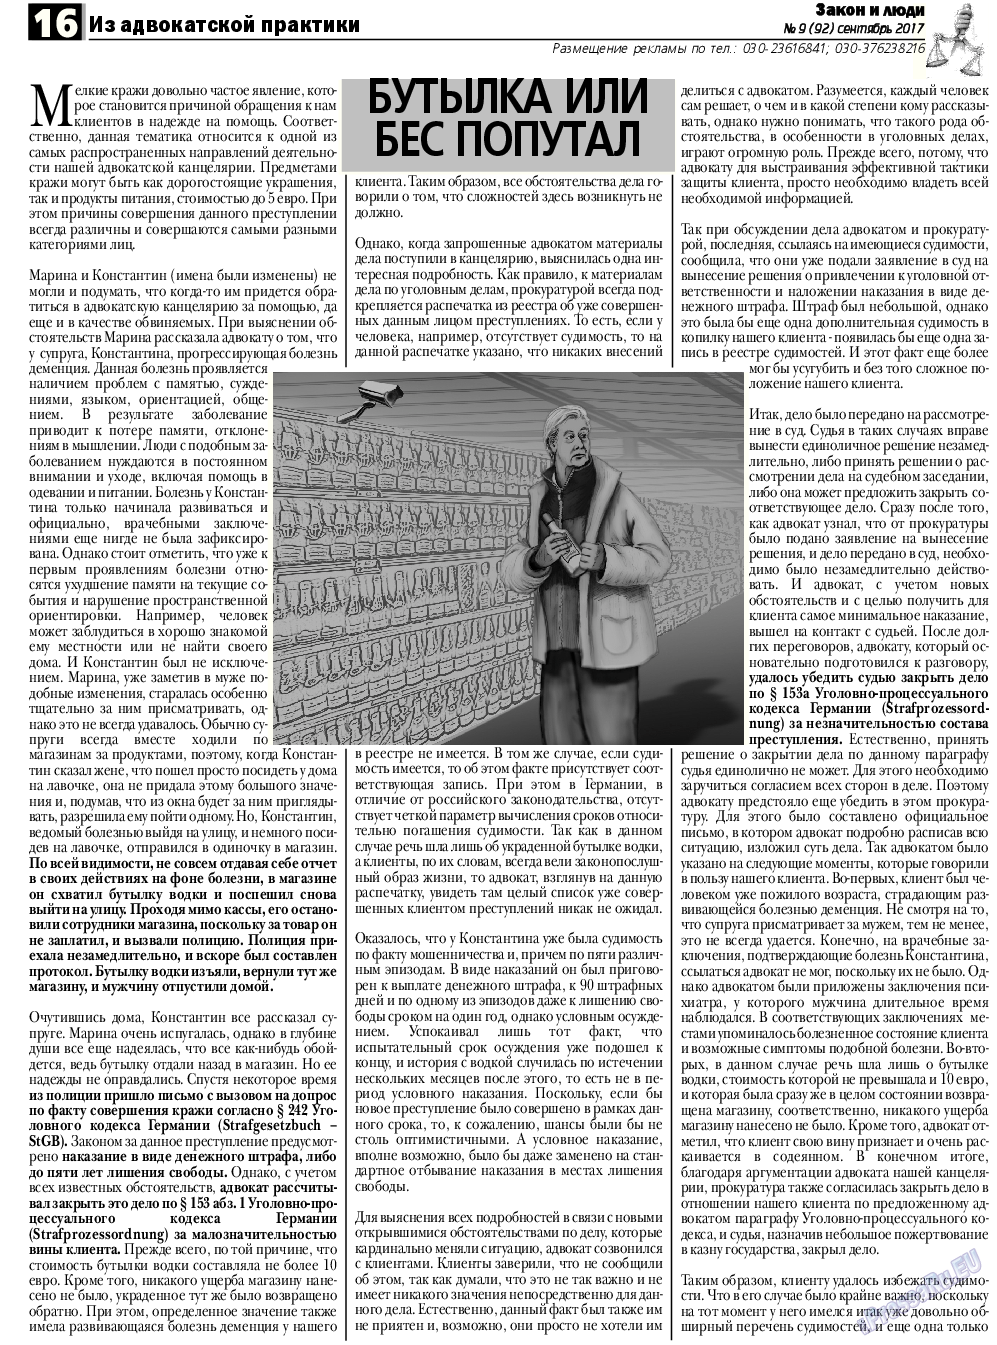 Закон и люди, газета. 2017 №9 стр.16